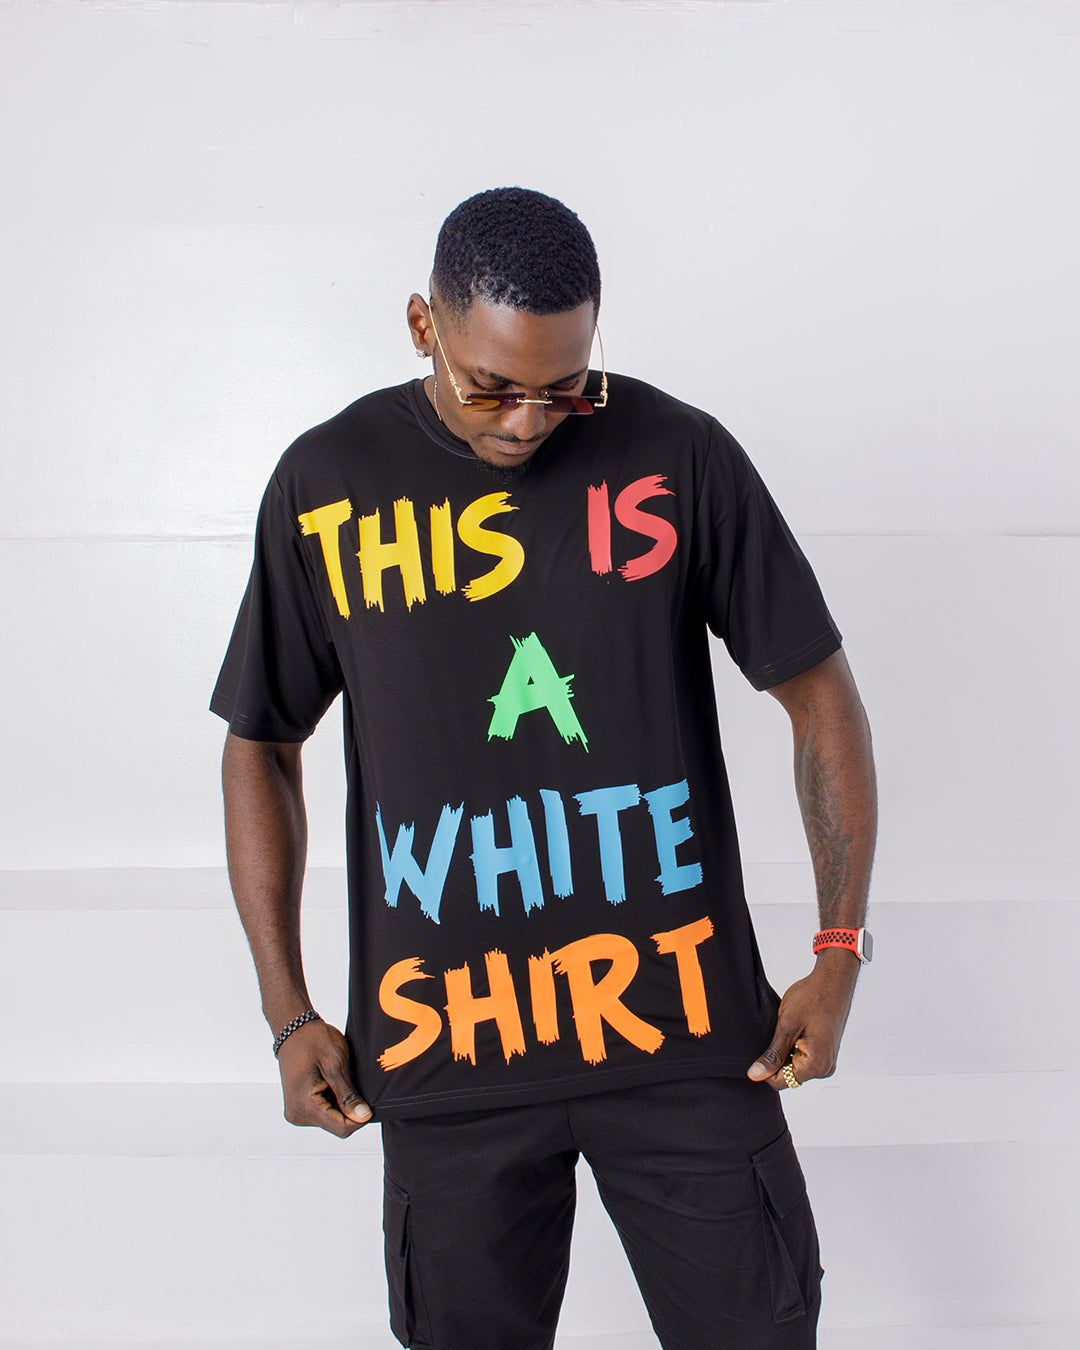 CURBAN CECI EST UNE CHEMISE BLANCHE Slogan T-Shirt Homme Surdimensionné